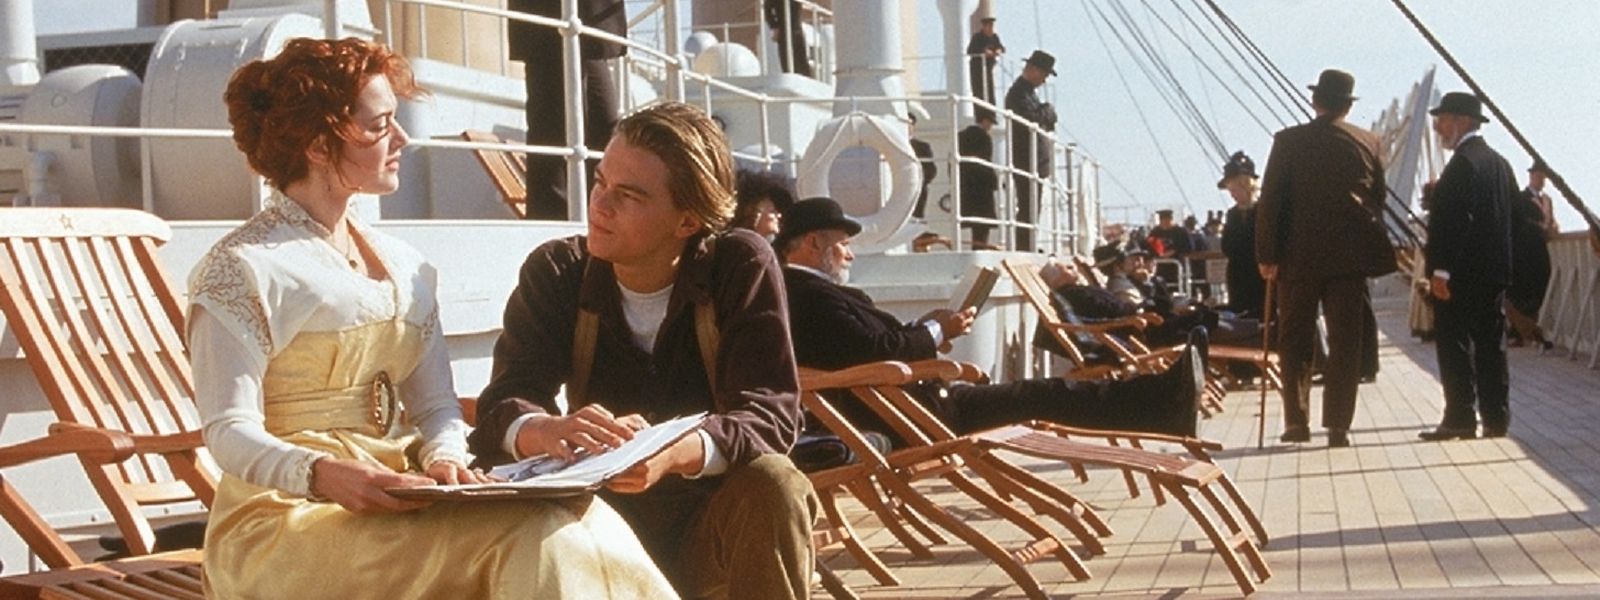 Kate Winslet und Leonardo DiCaprio begeisterten als Hauptdarsteller.
